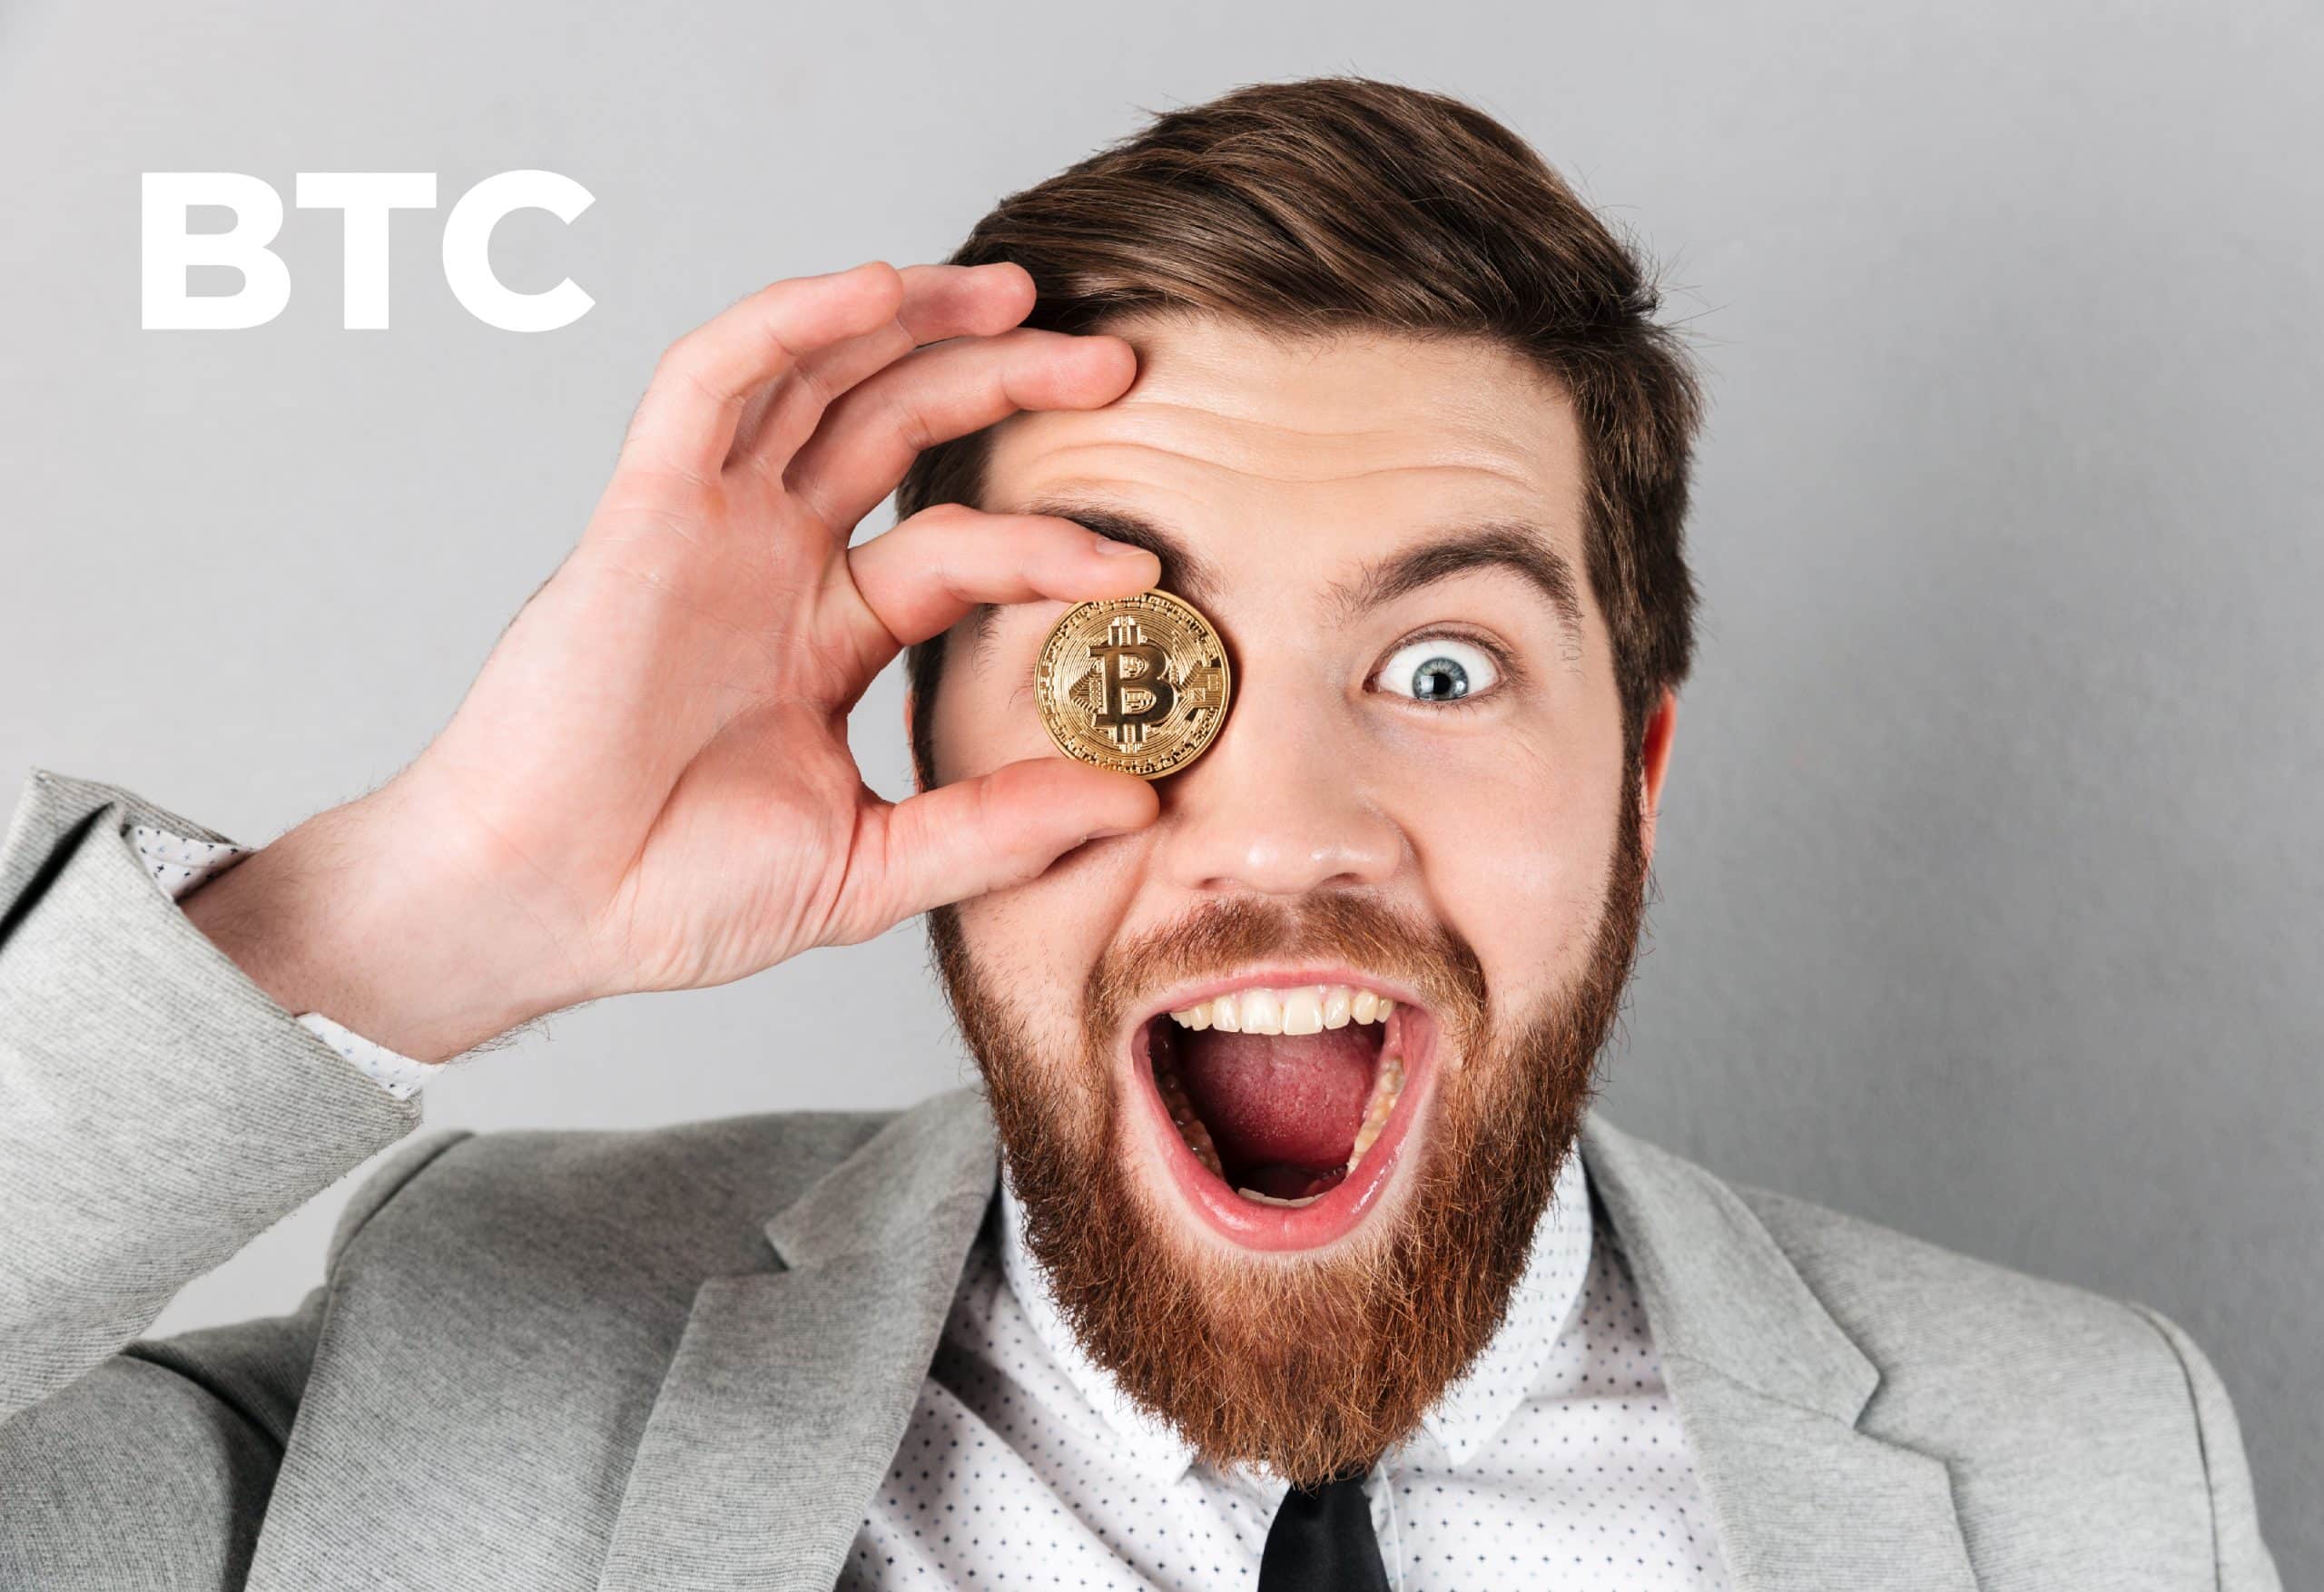 ¿Qué es Bitcoin (BTC)?